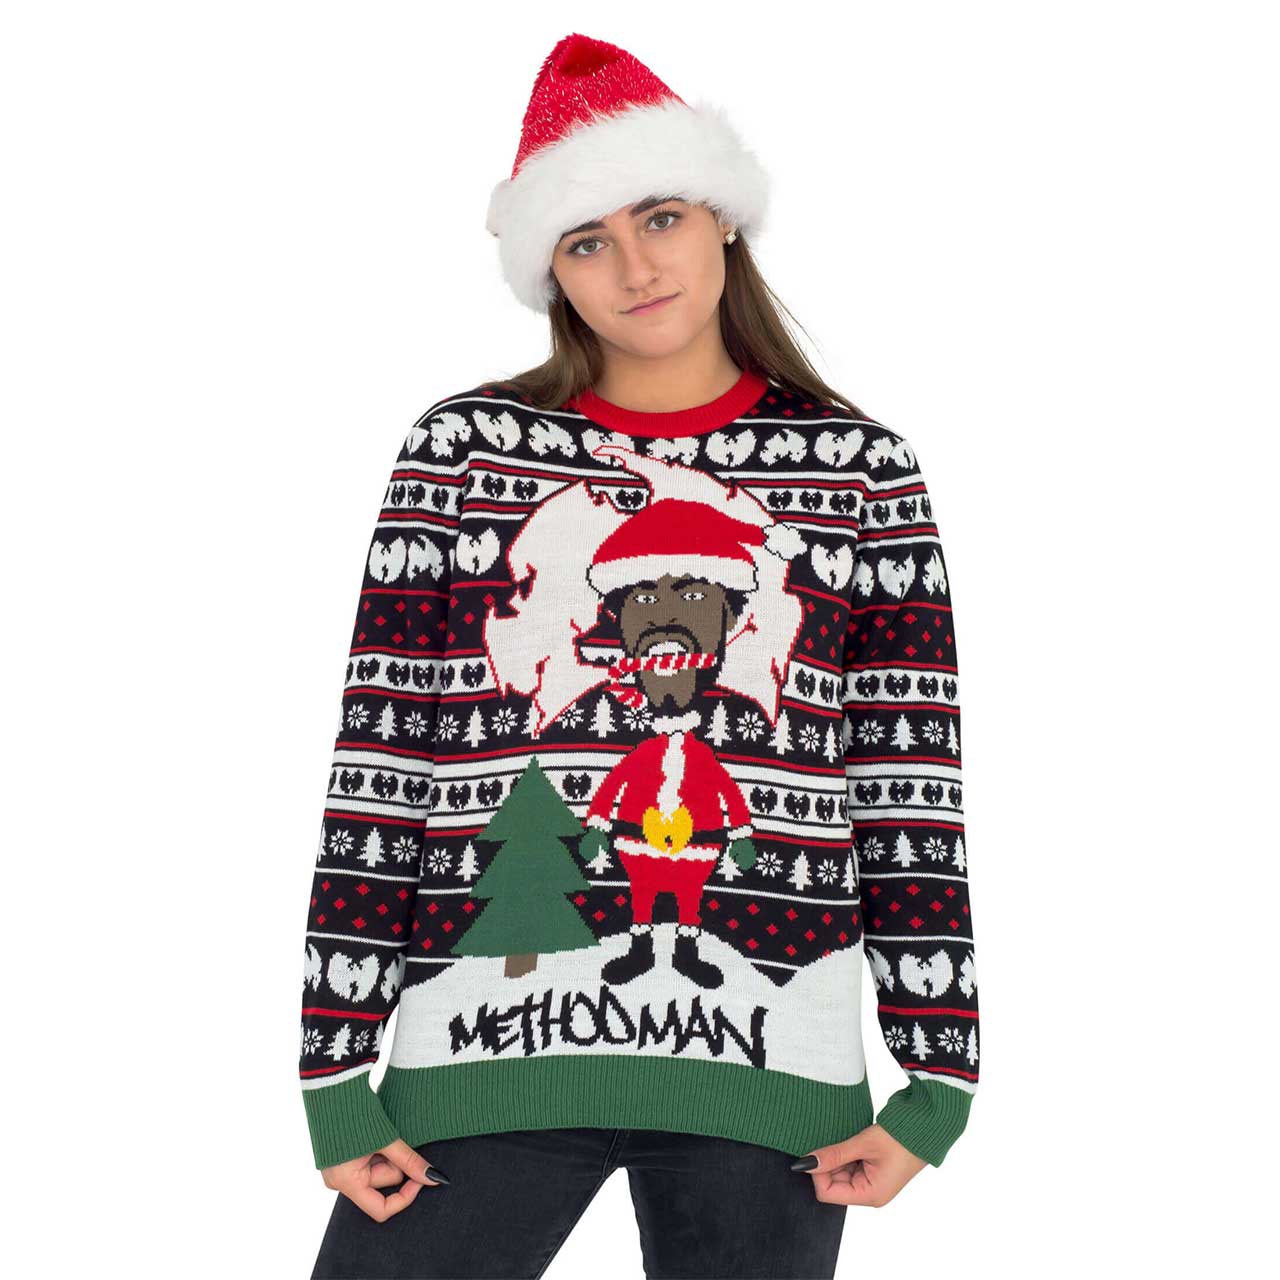 Women’s Method Man Ugly Christmas Sweater,Ugly Christmas Sweaters | Funny Xmas Sweaters for Men and Women